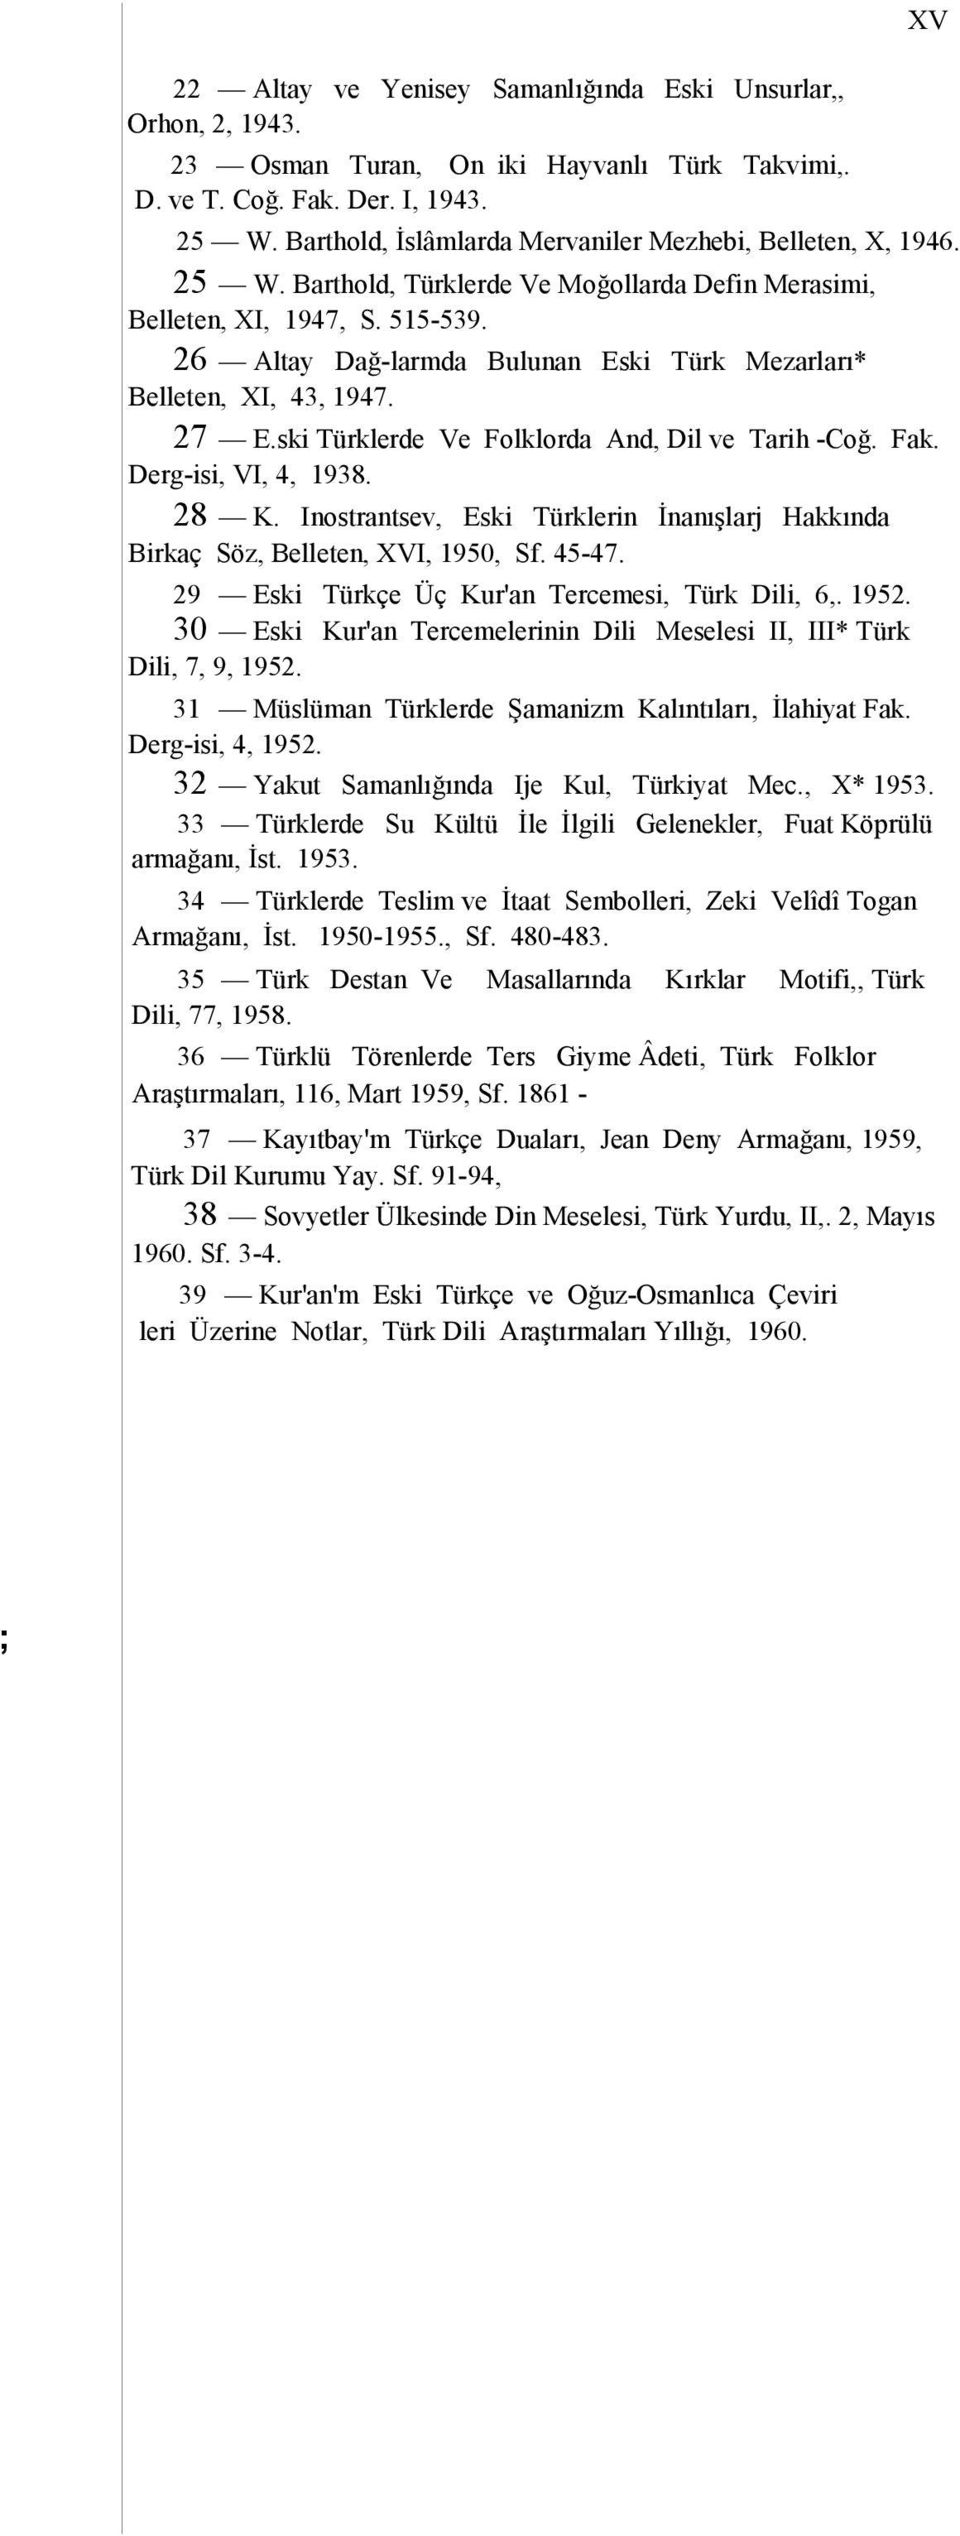 26 Altay Dağ-larmda Bulunan Eski Türk Mezarları* Belleten, XI, 43, 1947. 27 E.ski Türklerde Ve Folklorda And, Dil ve Tarih -Coğ. Fak. Derg-isi, VI, 4, 1938. 28 K.